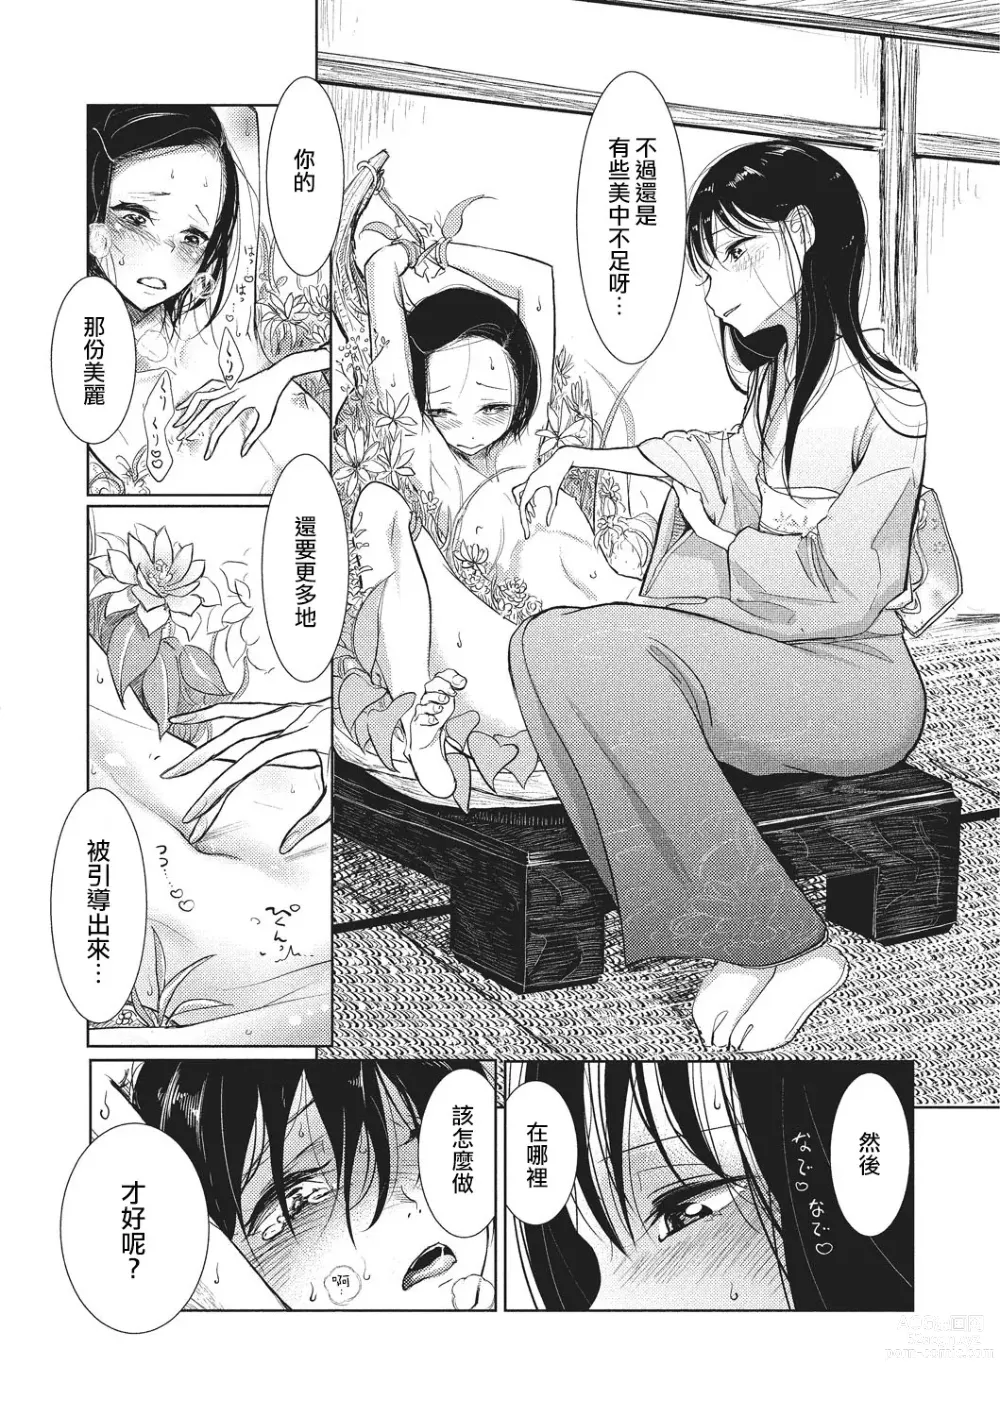 Page 187 of manga Bokura wa...